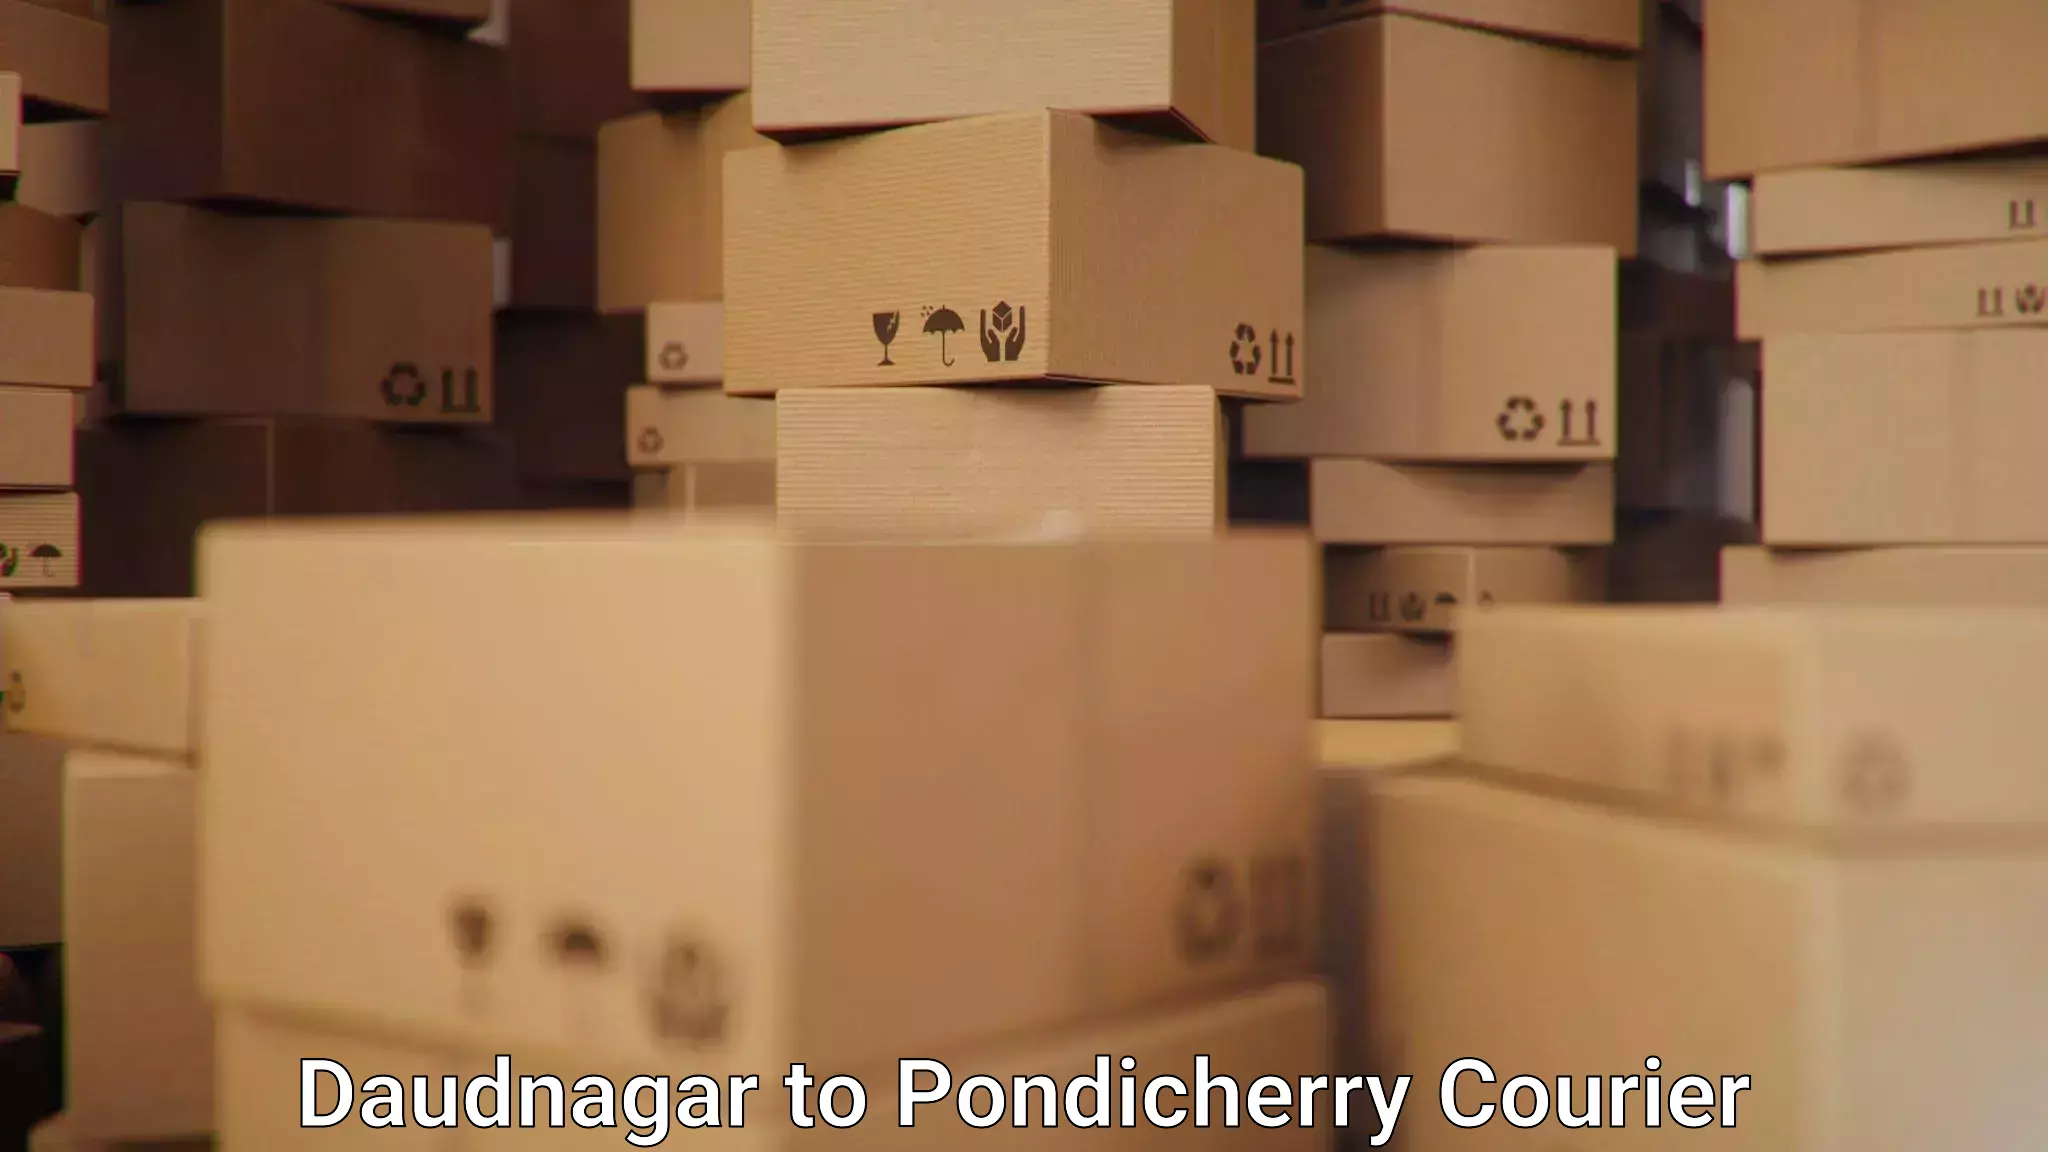 24/7 courier service Daudnagar to Pondicherry University